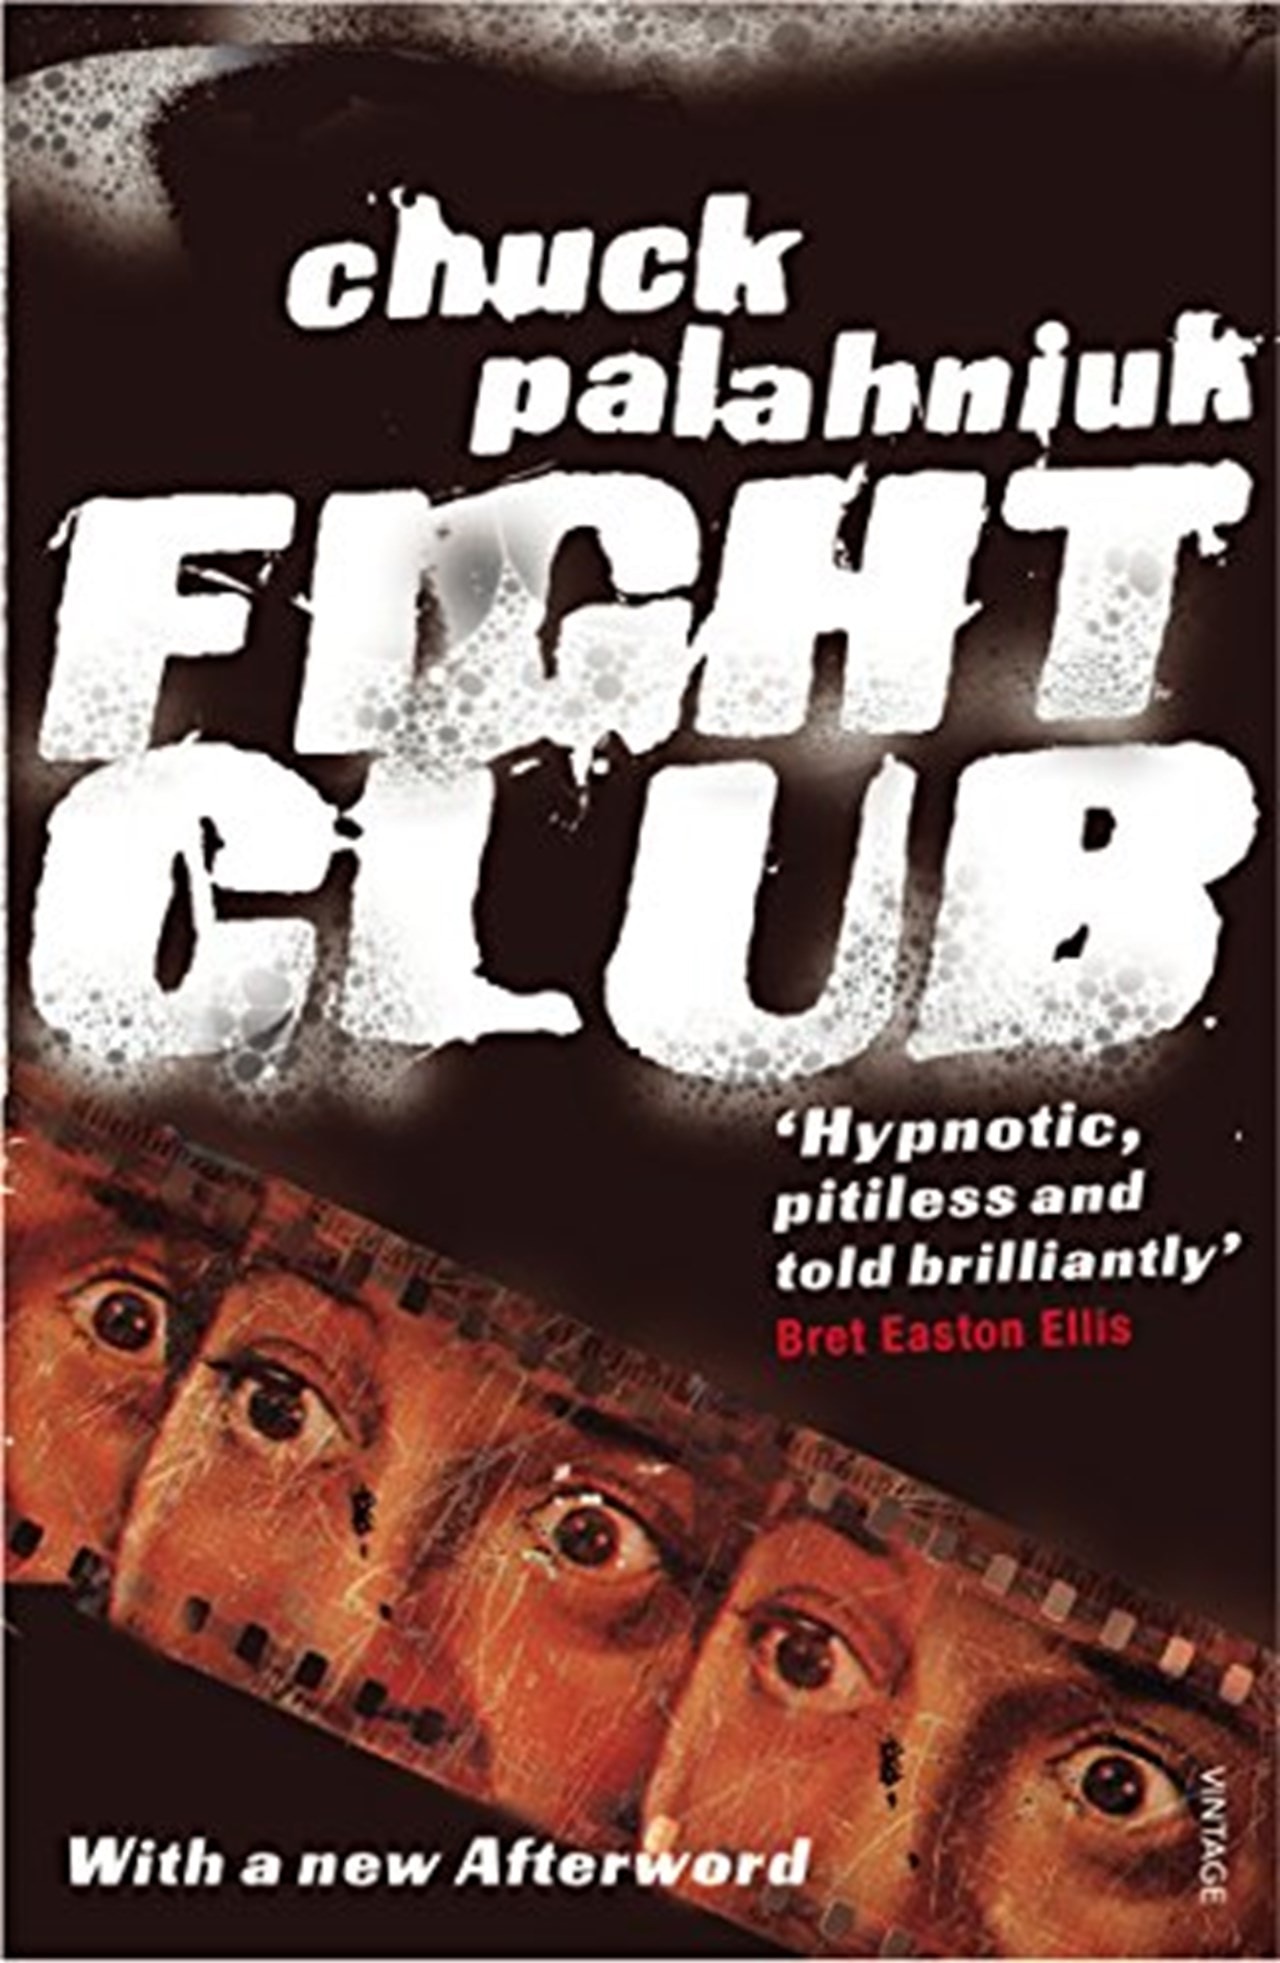 fight club book